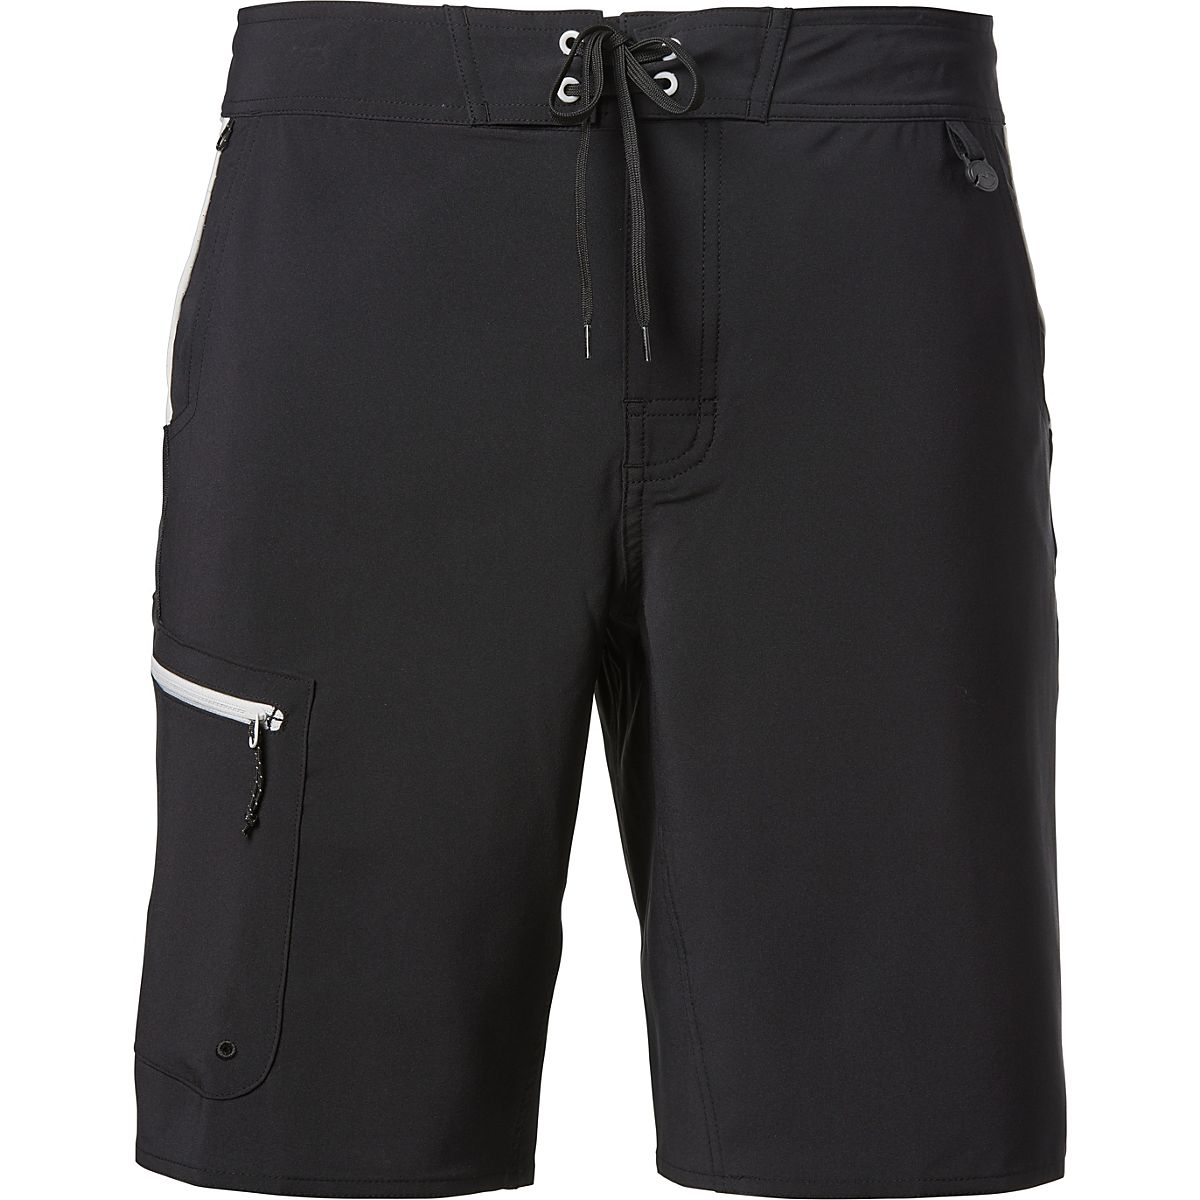 Magellan Fishing Gear Shorts - XL boys